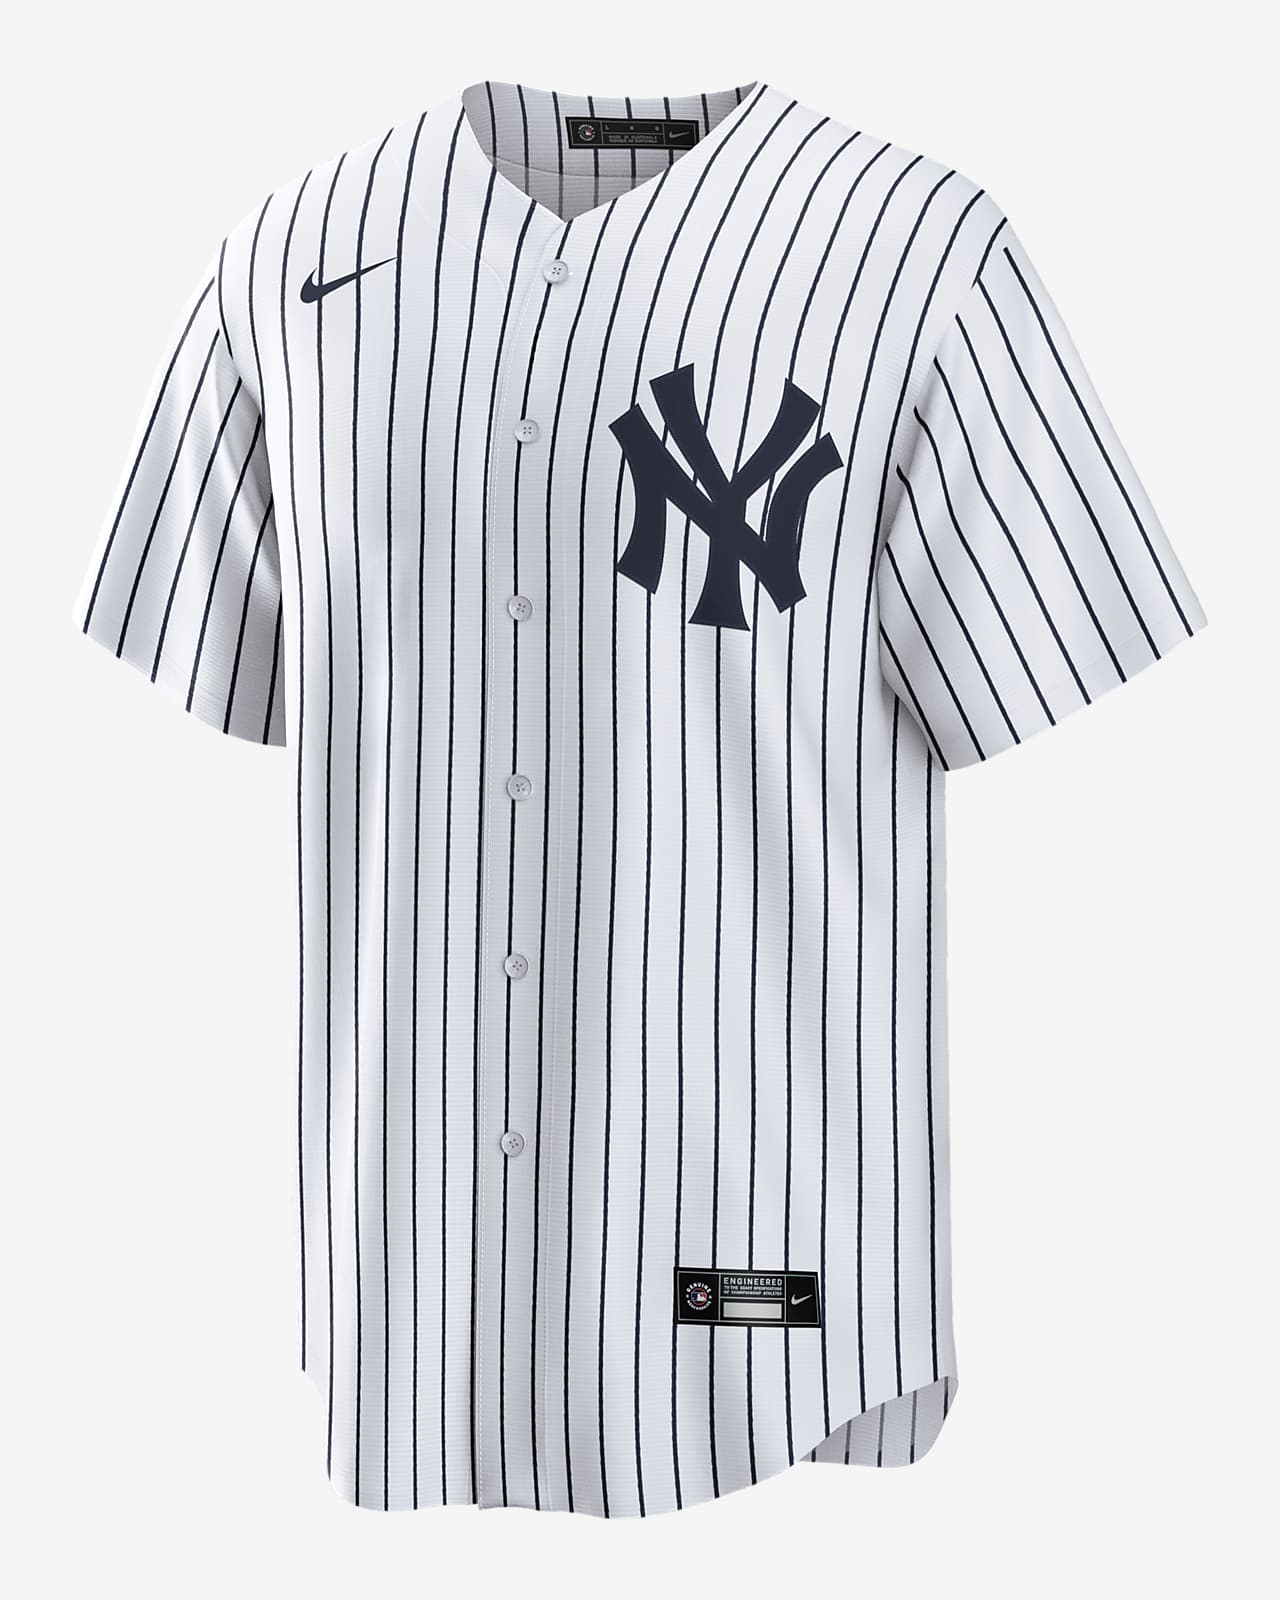 new york yankees aaron judge jersey